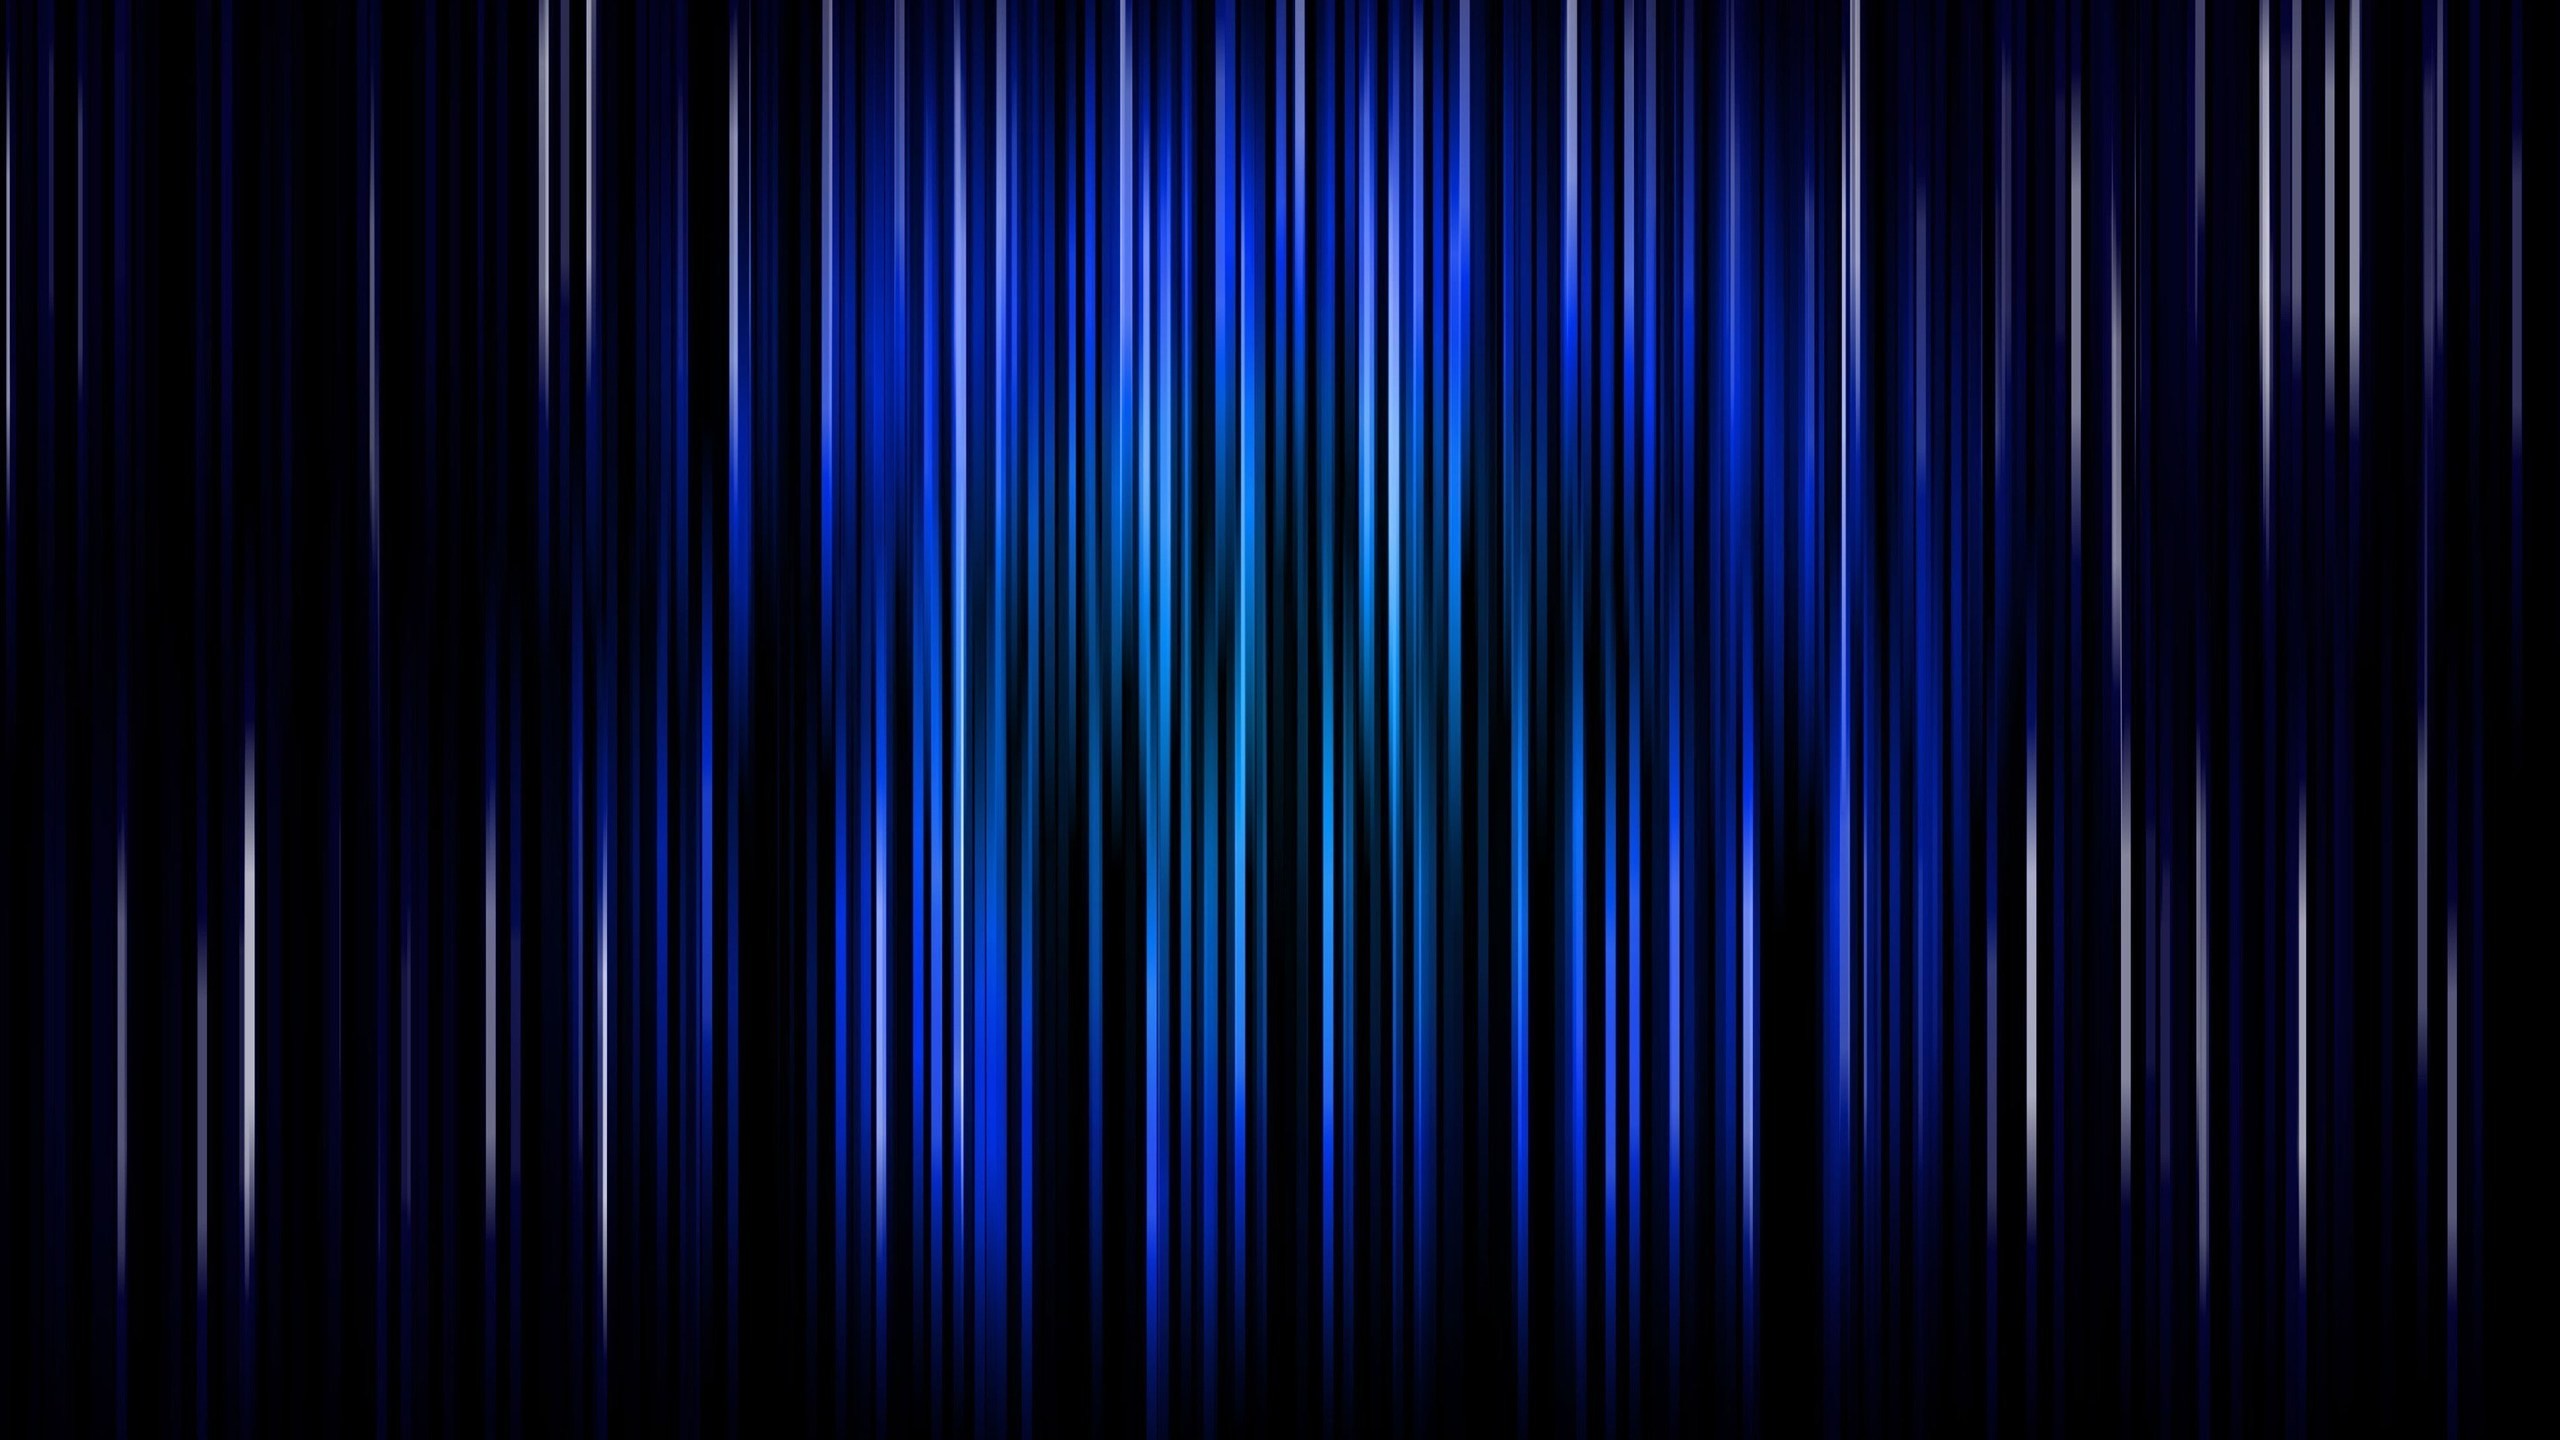 fondo de pantalla de pixel art,azul,negro,azul eléctrico,púrpura,azul cobalto